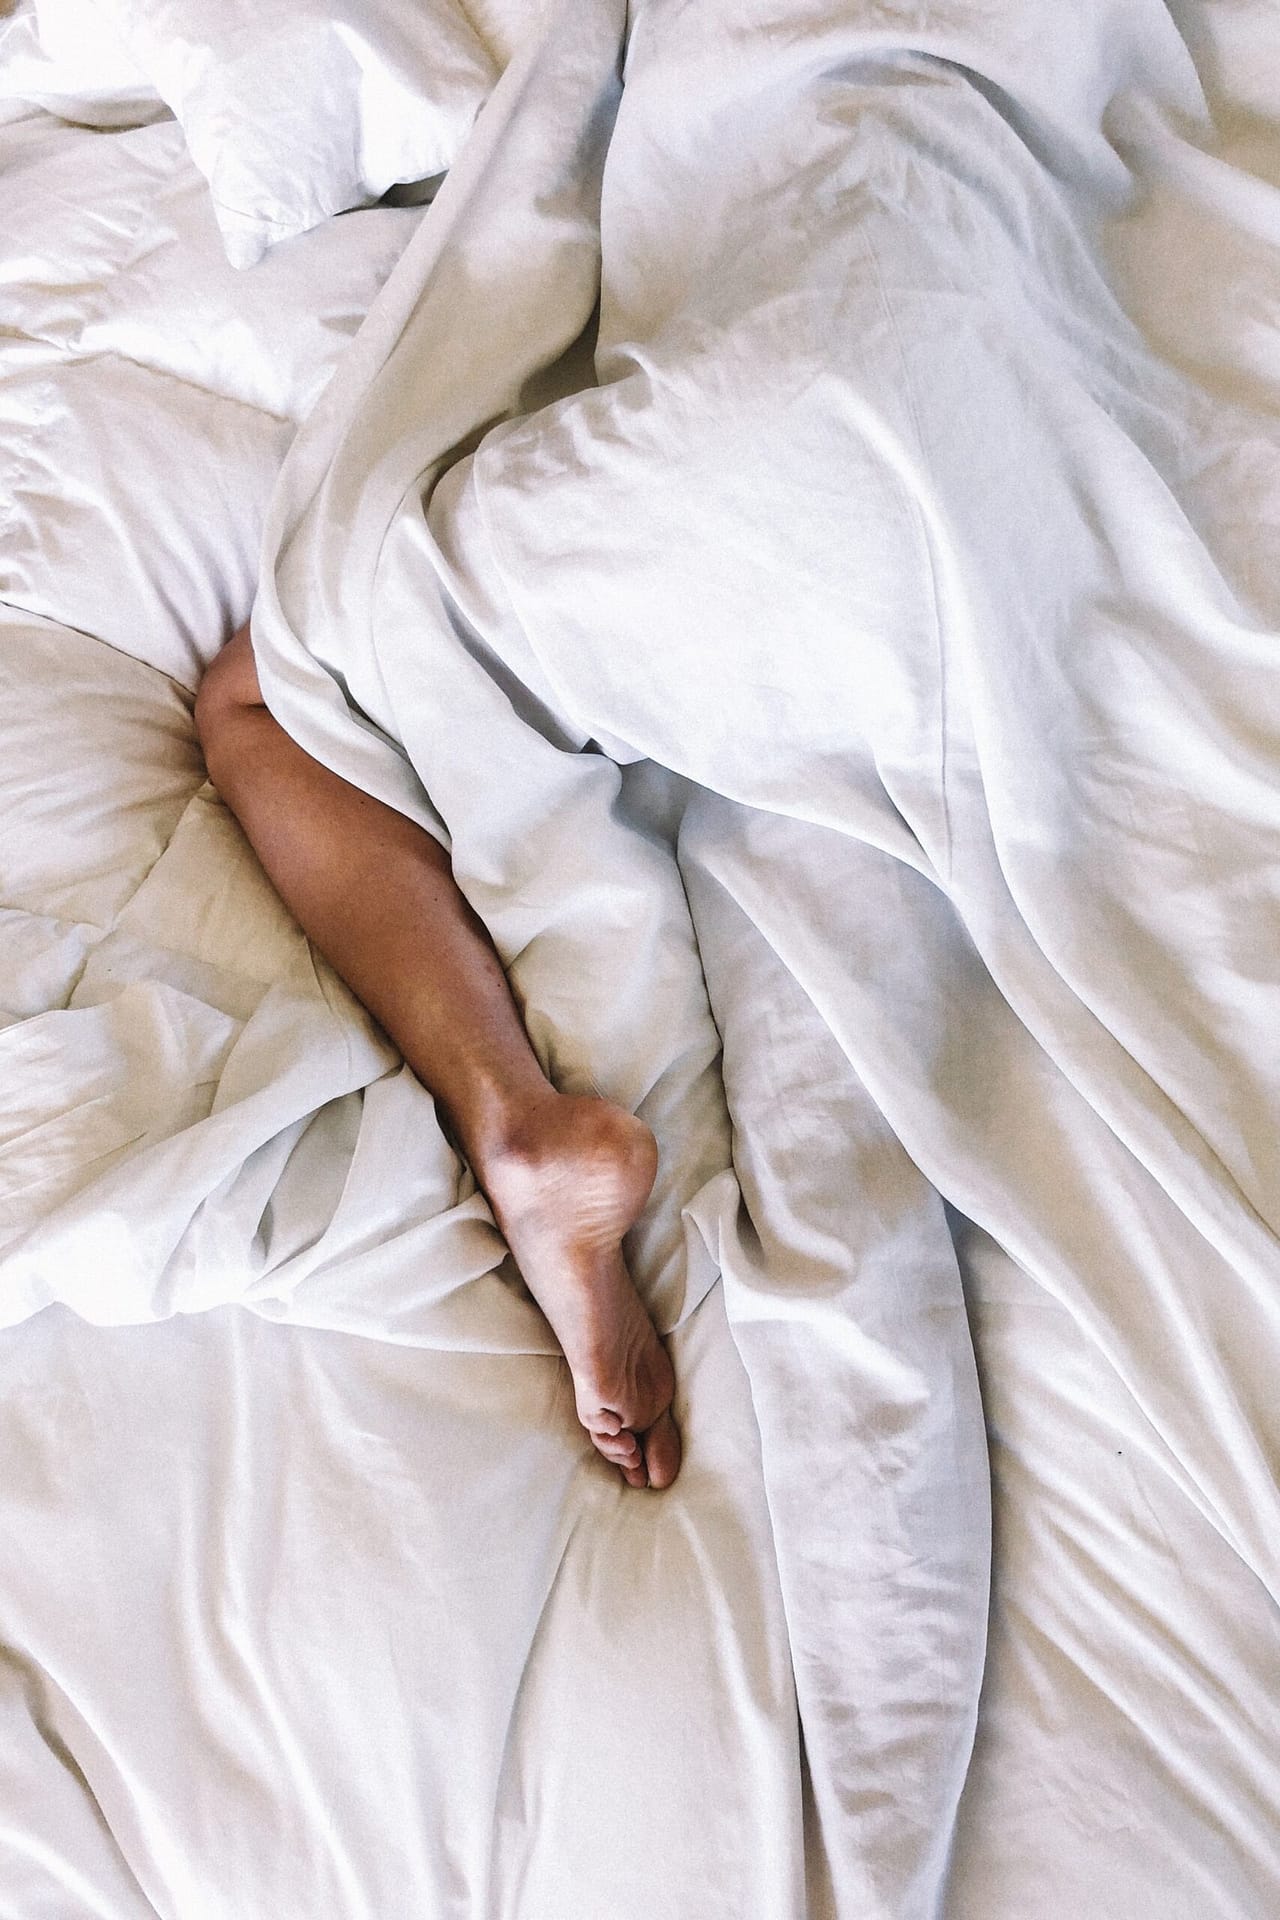 Sleep Better Tonight: 5 Tips for a Restful Night’s Sleep